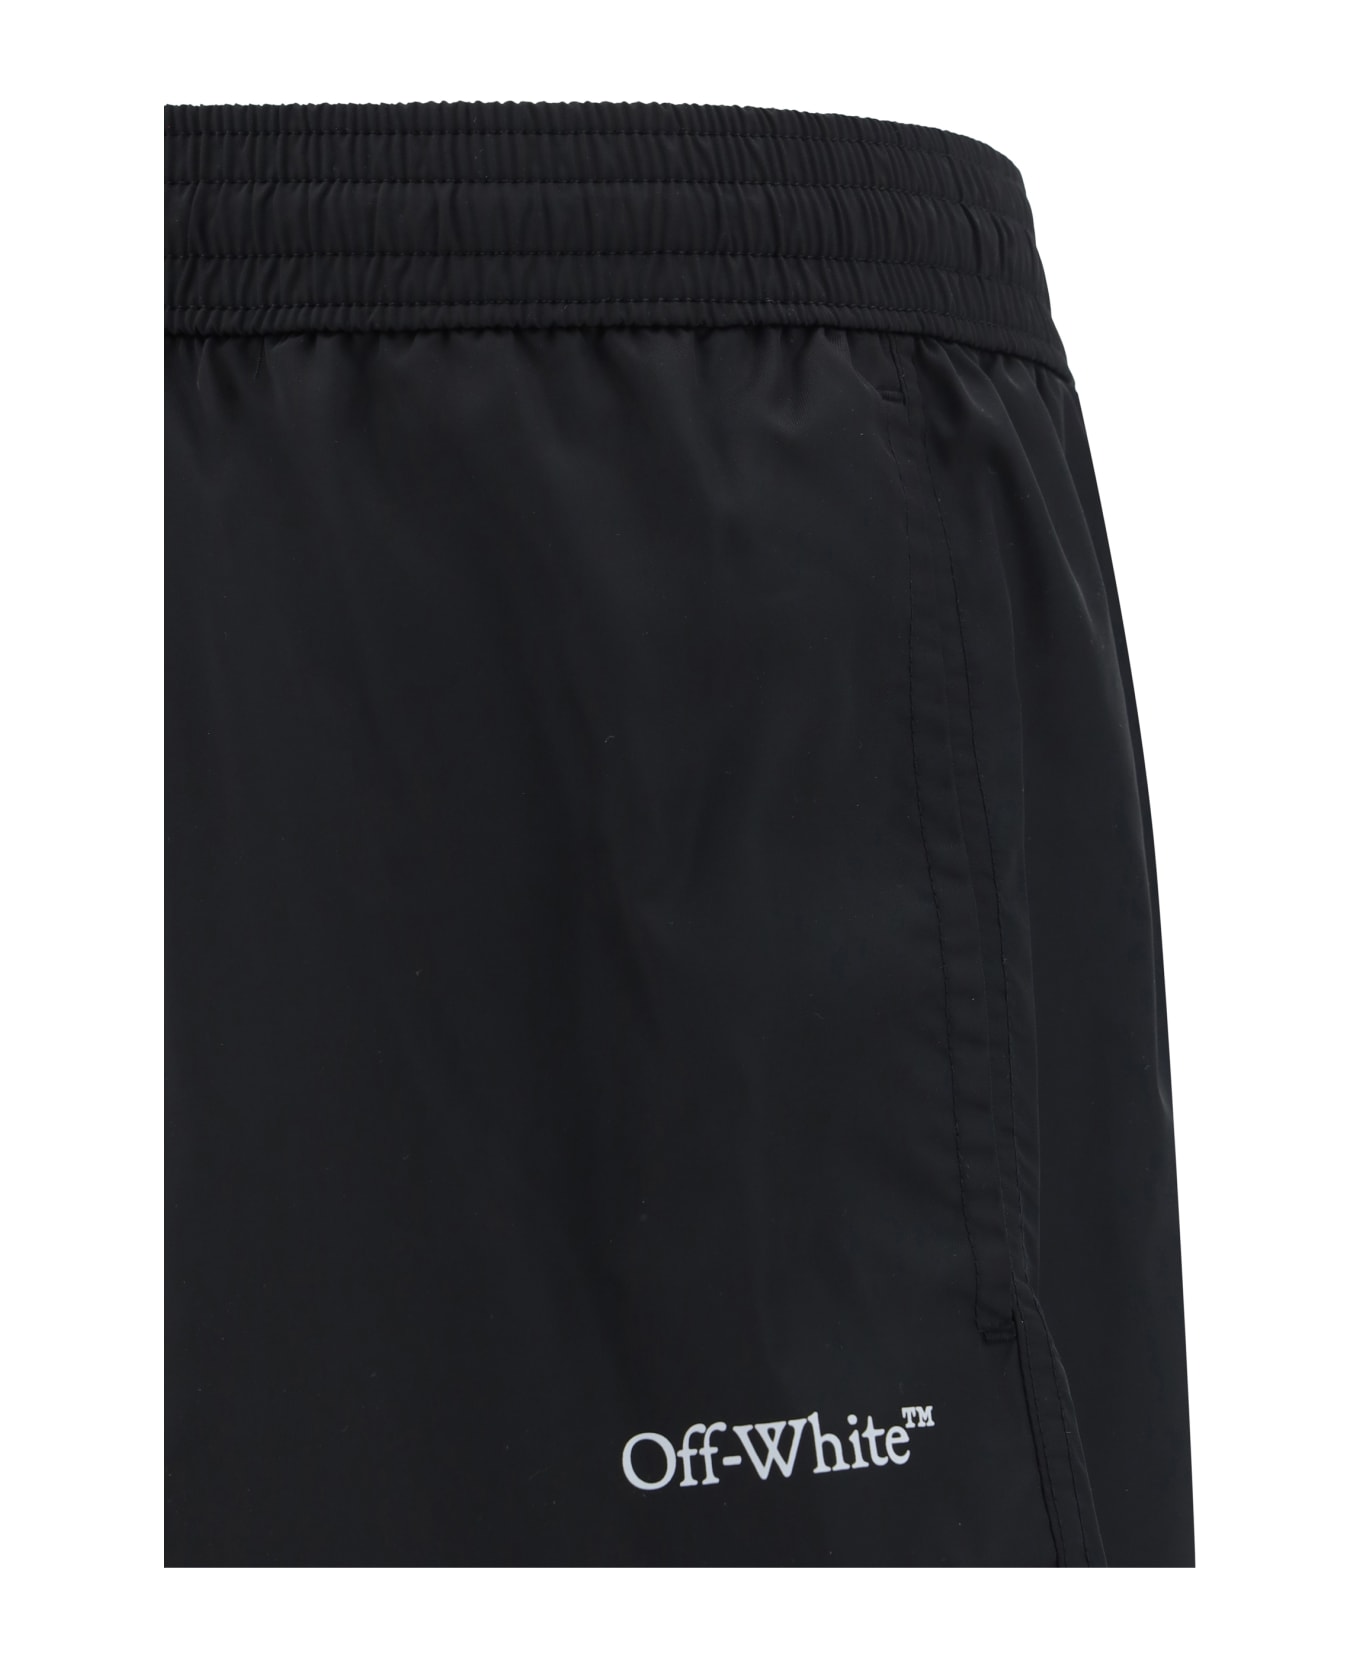 Off-White Nylon Swim Shorts - Black White 水着